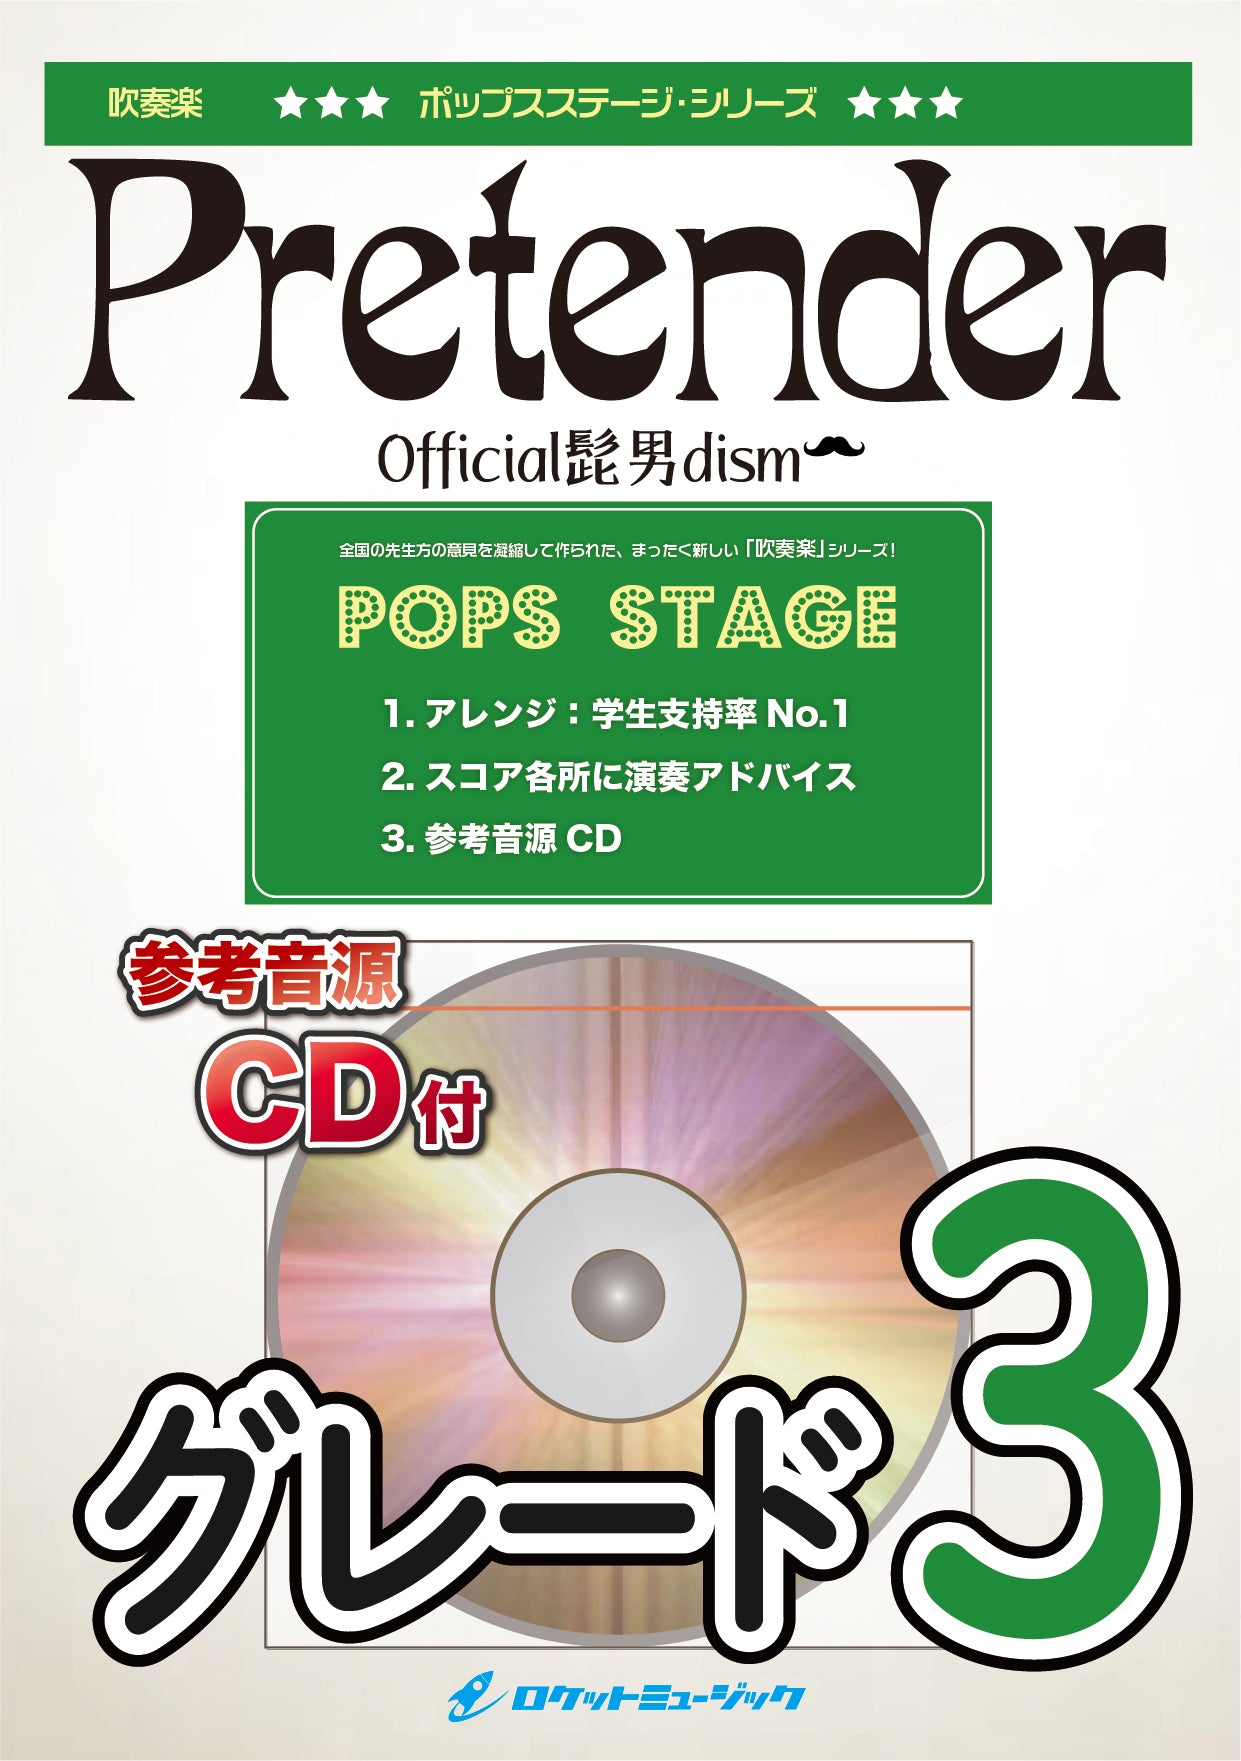 【数量限定初回限定盤】Official髭男dism Pretender DVD付